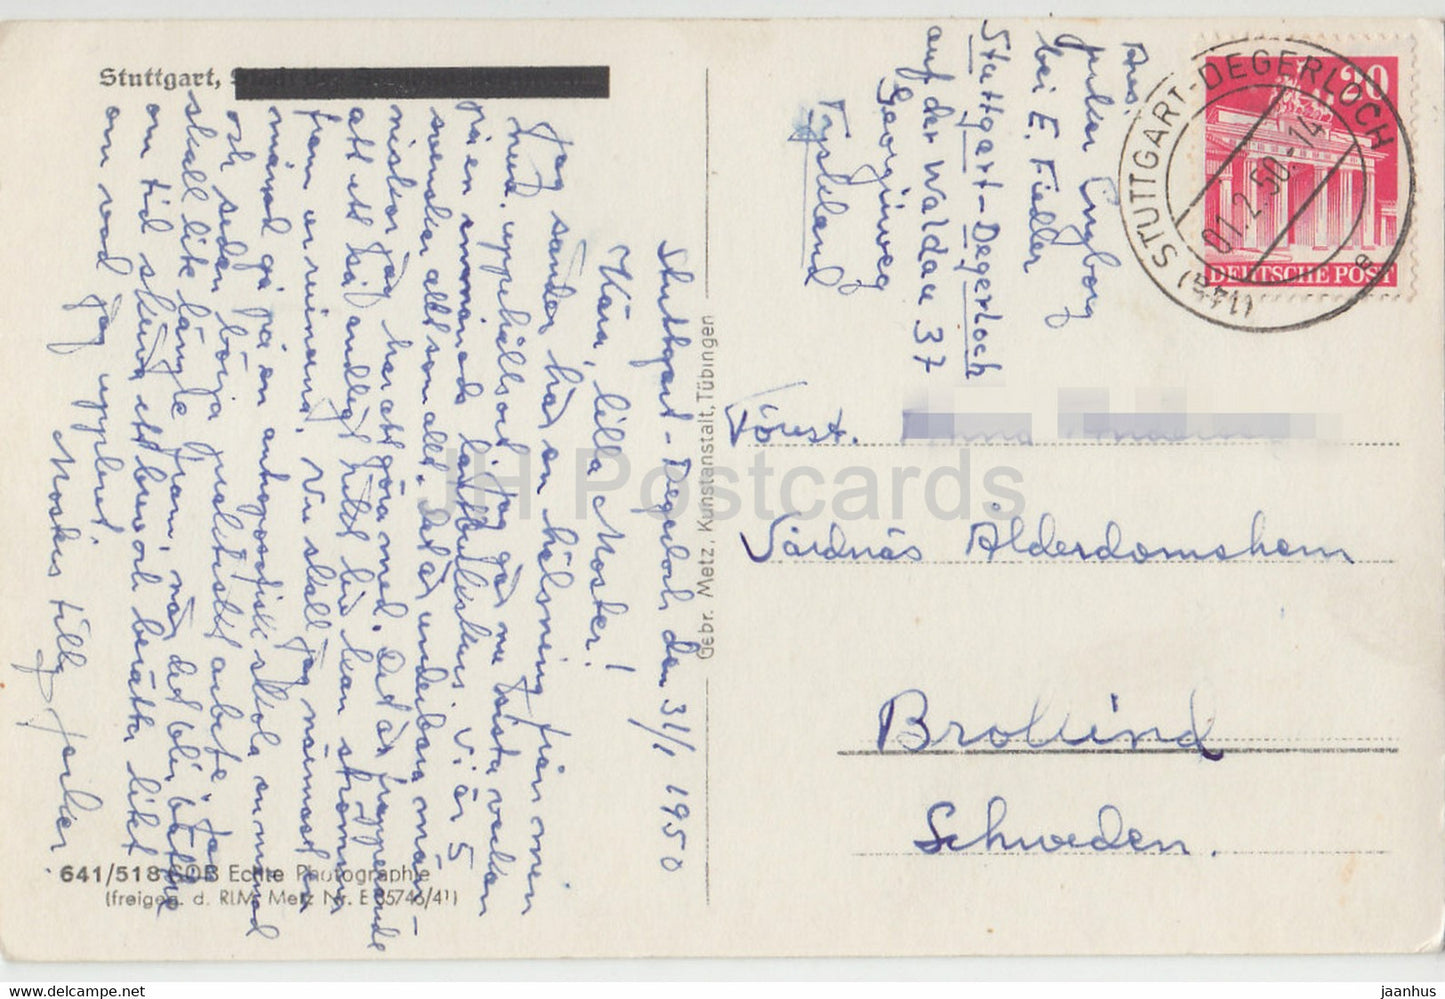 Stuttgart - carte postale ancienne - 1950 - Allemagne - utilisé